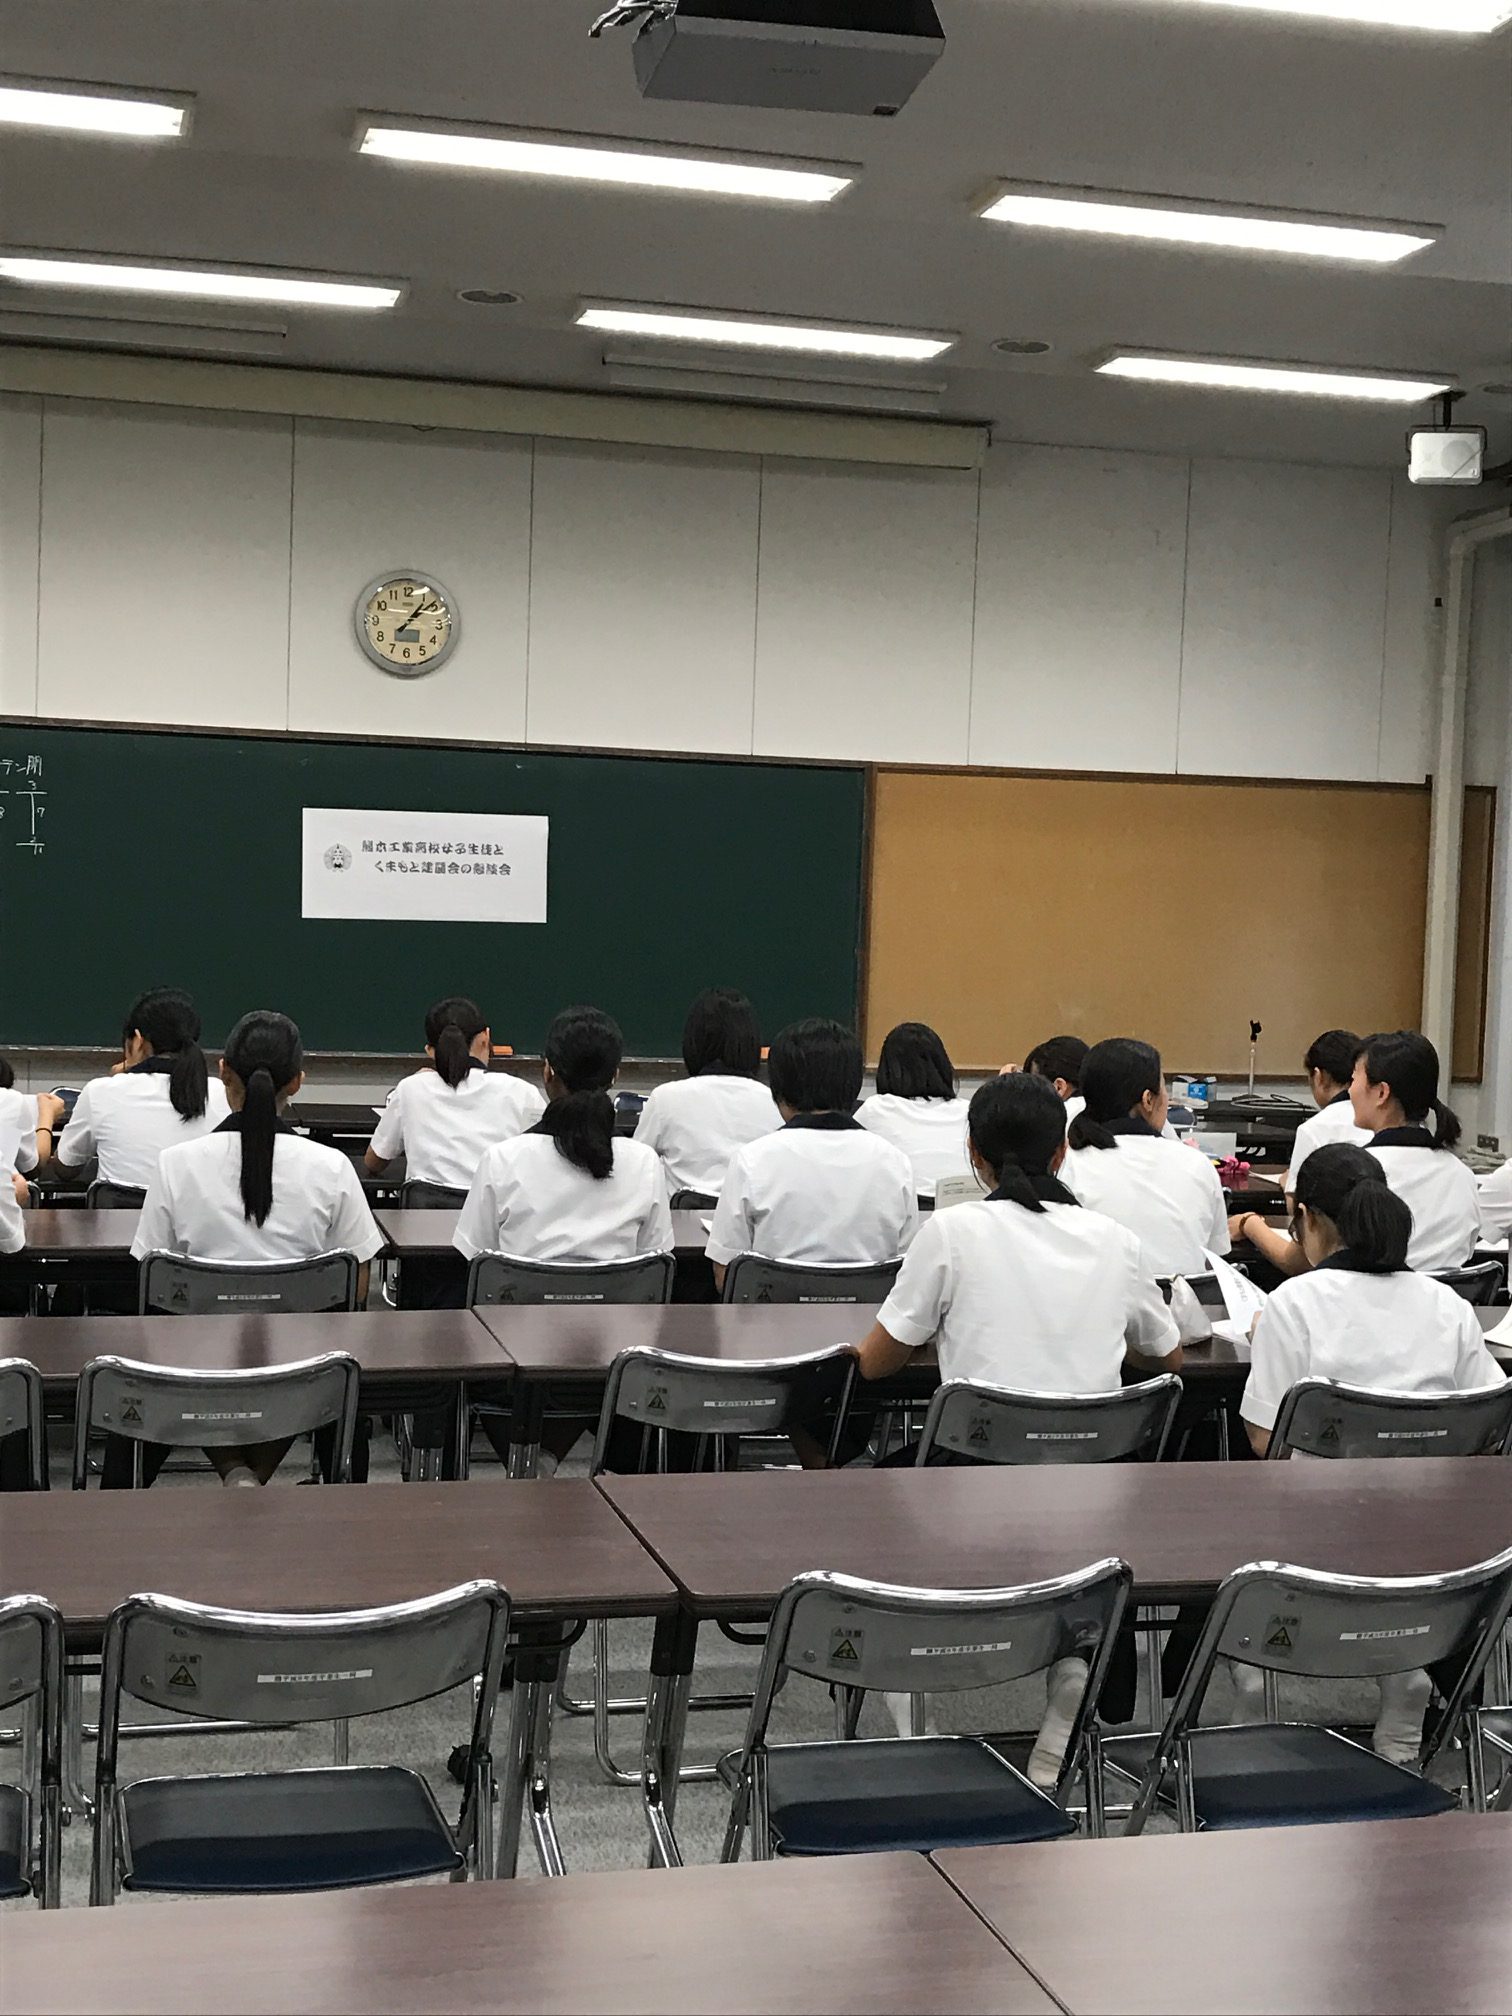 熊本工業高校女子生徒とくまもと建麗会との懇談会